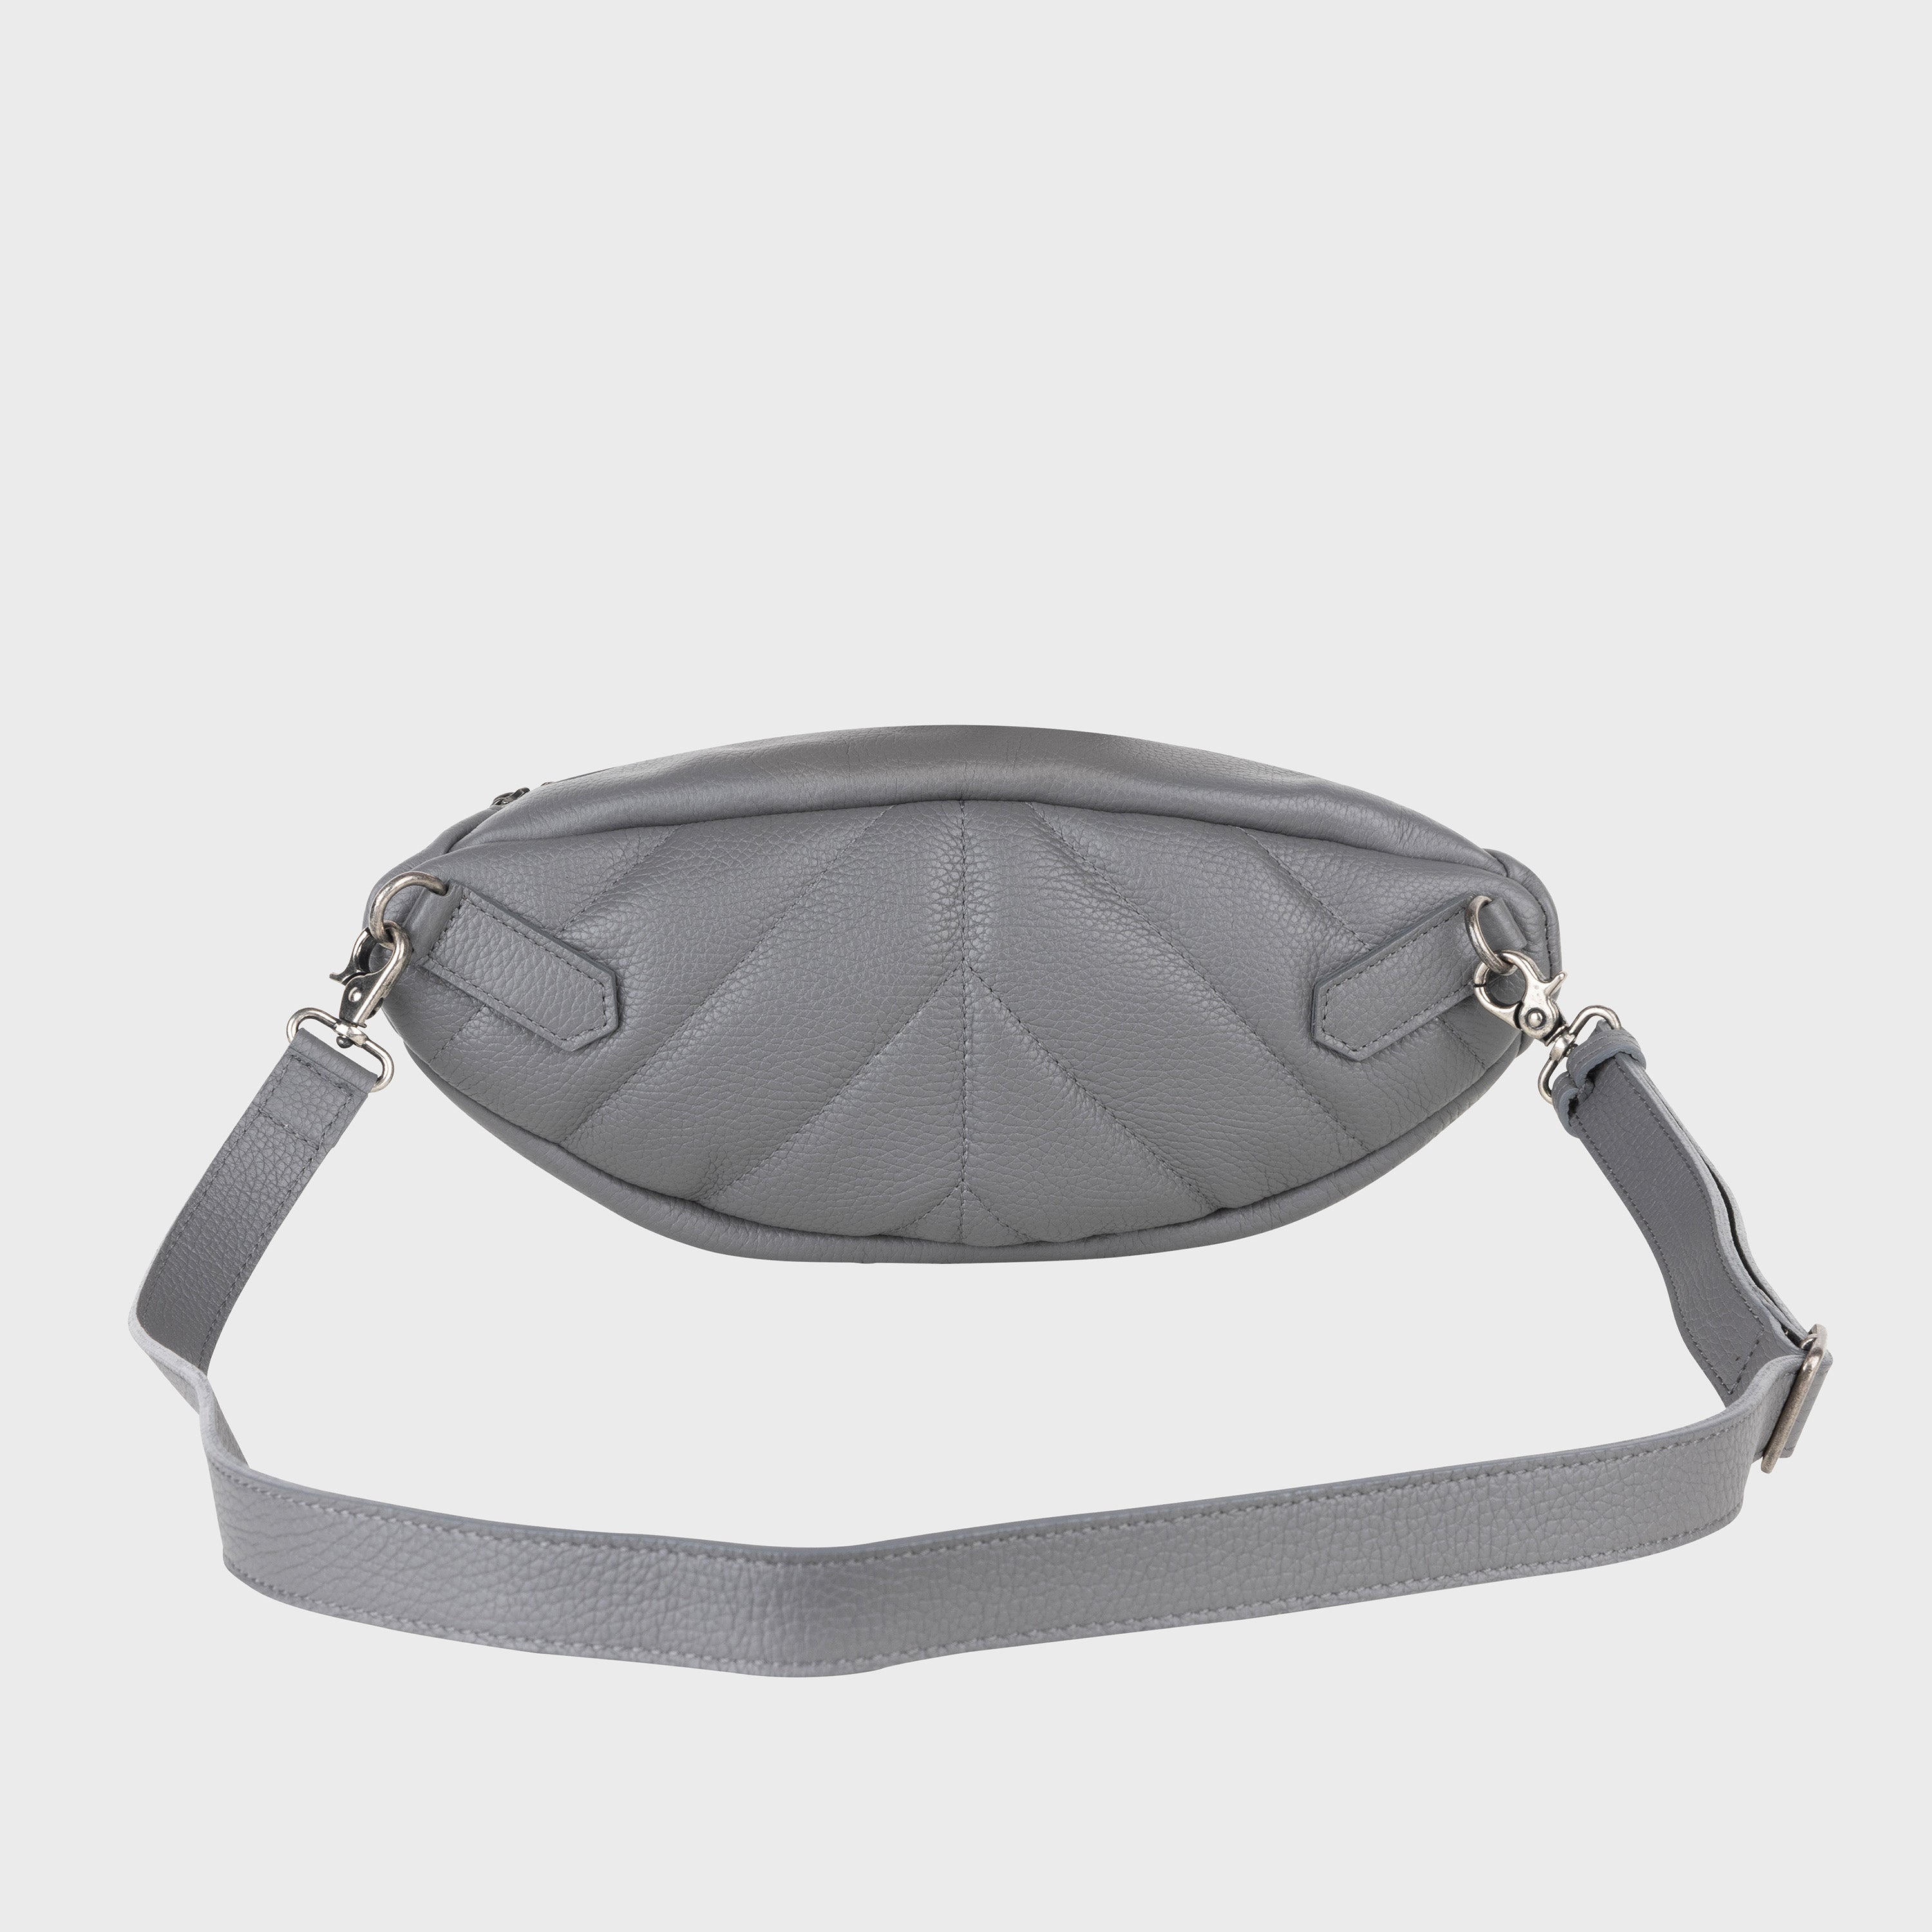 Vlieger & Vandam - Gun Belt Bag Black, embossed leather gun bag